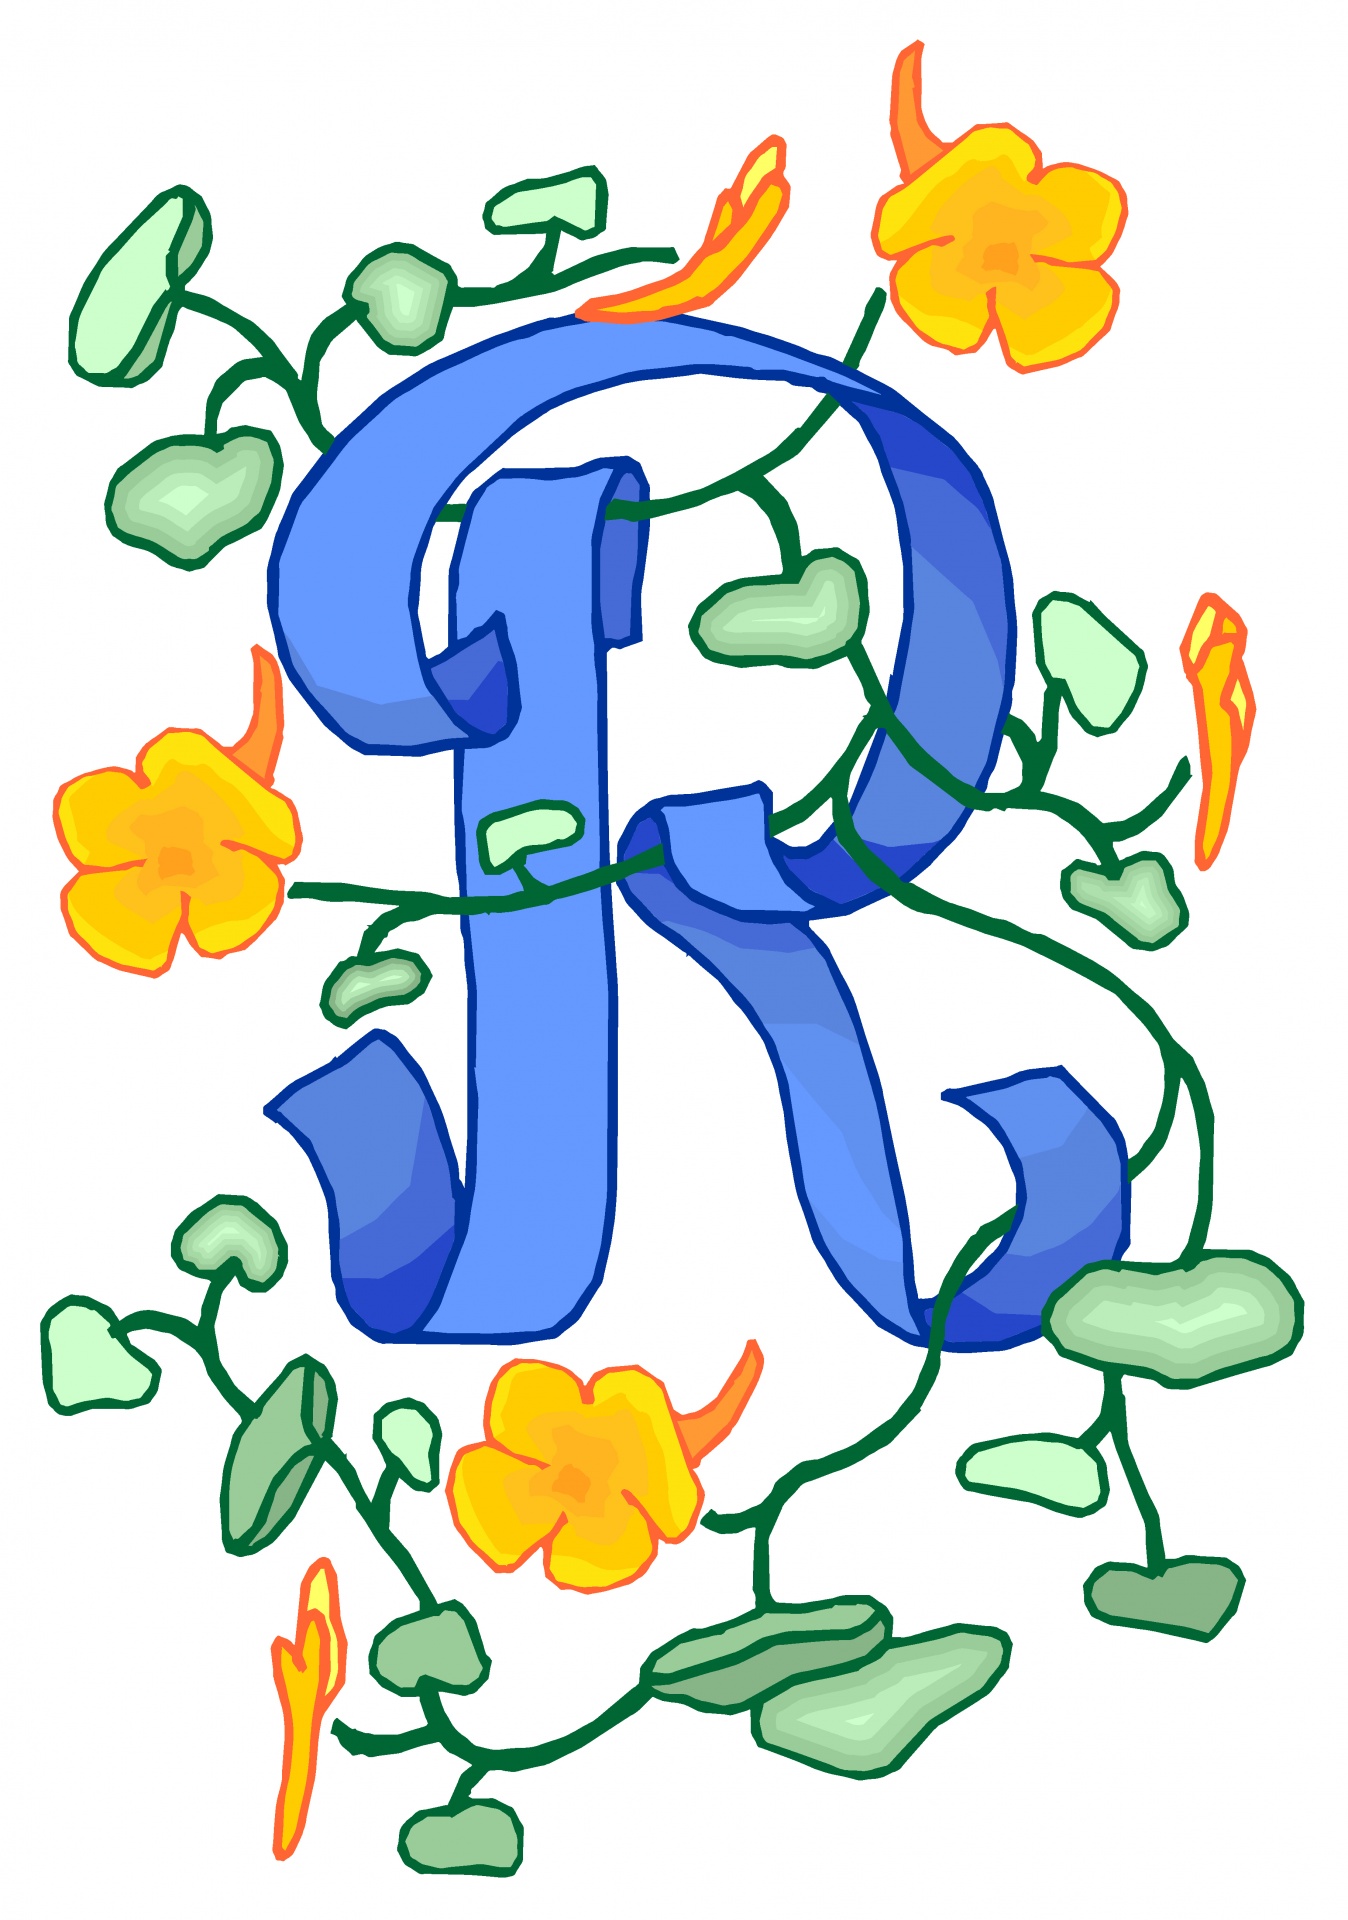 Florido azul da letra R